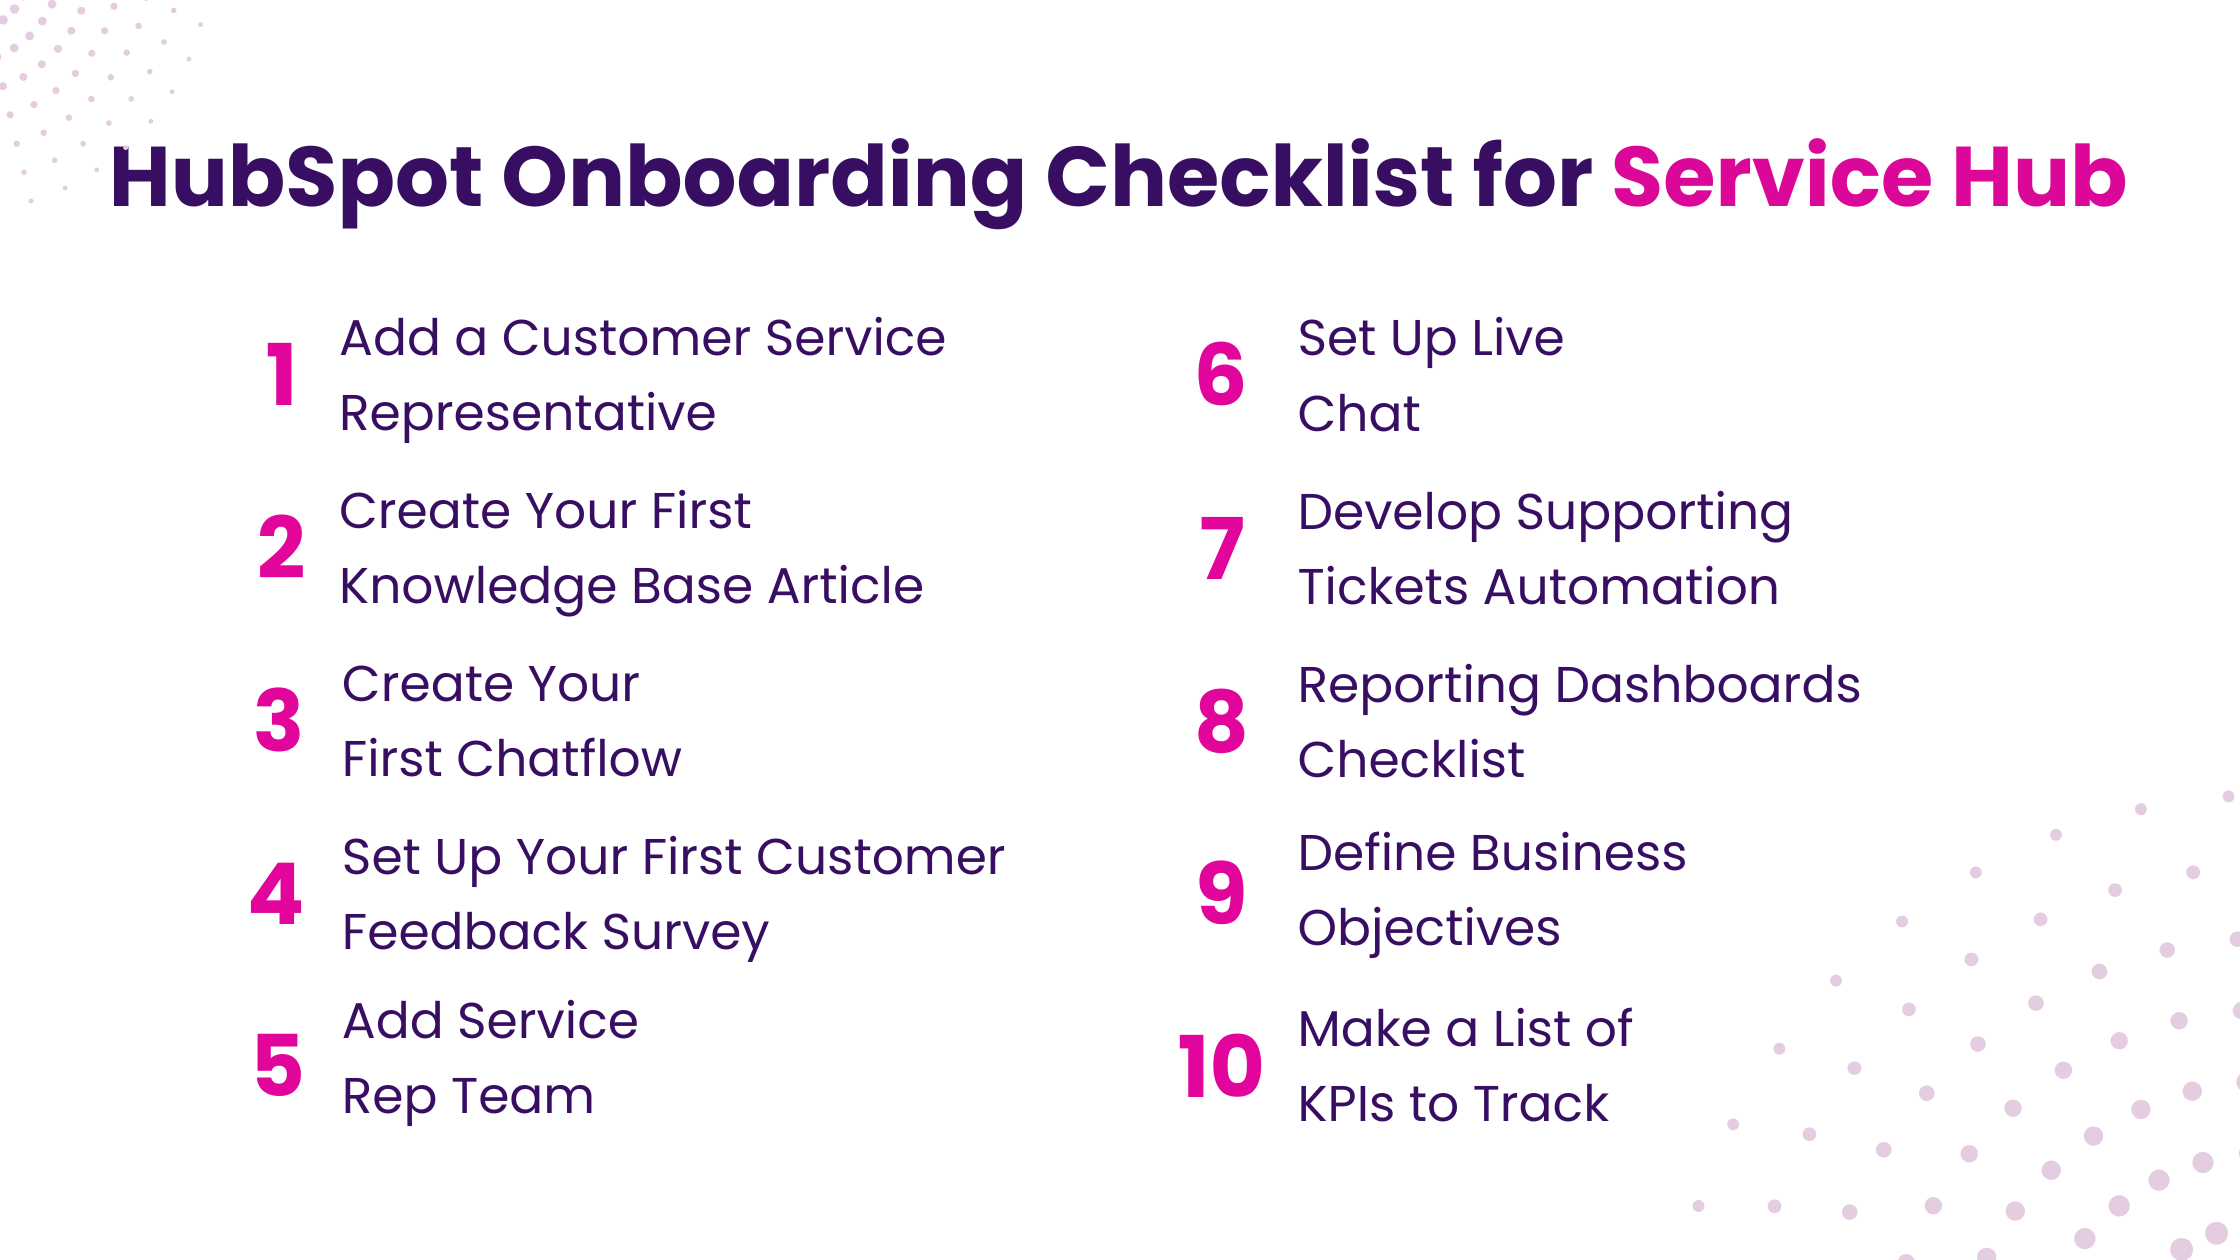 HubSpot Onboarding Checklist for Service Hub